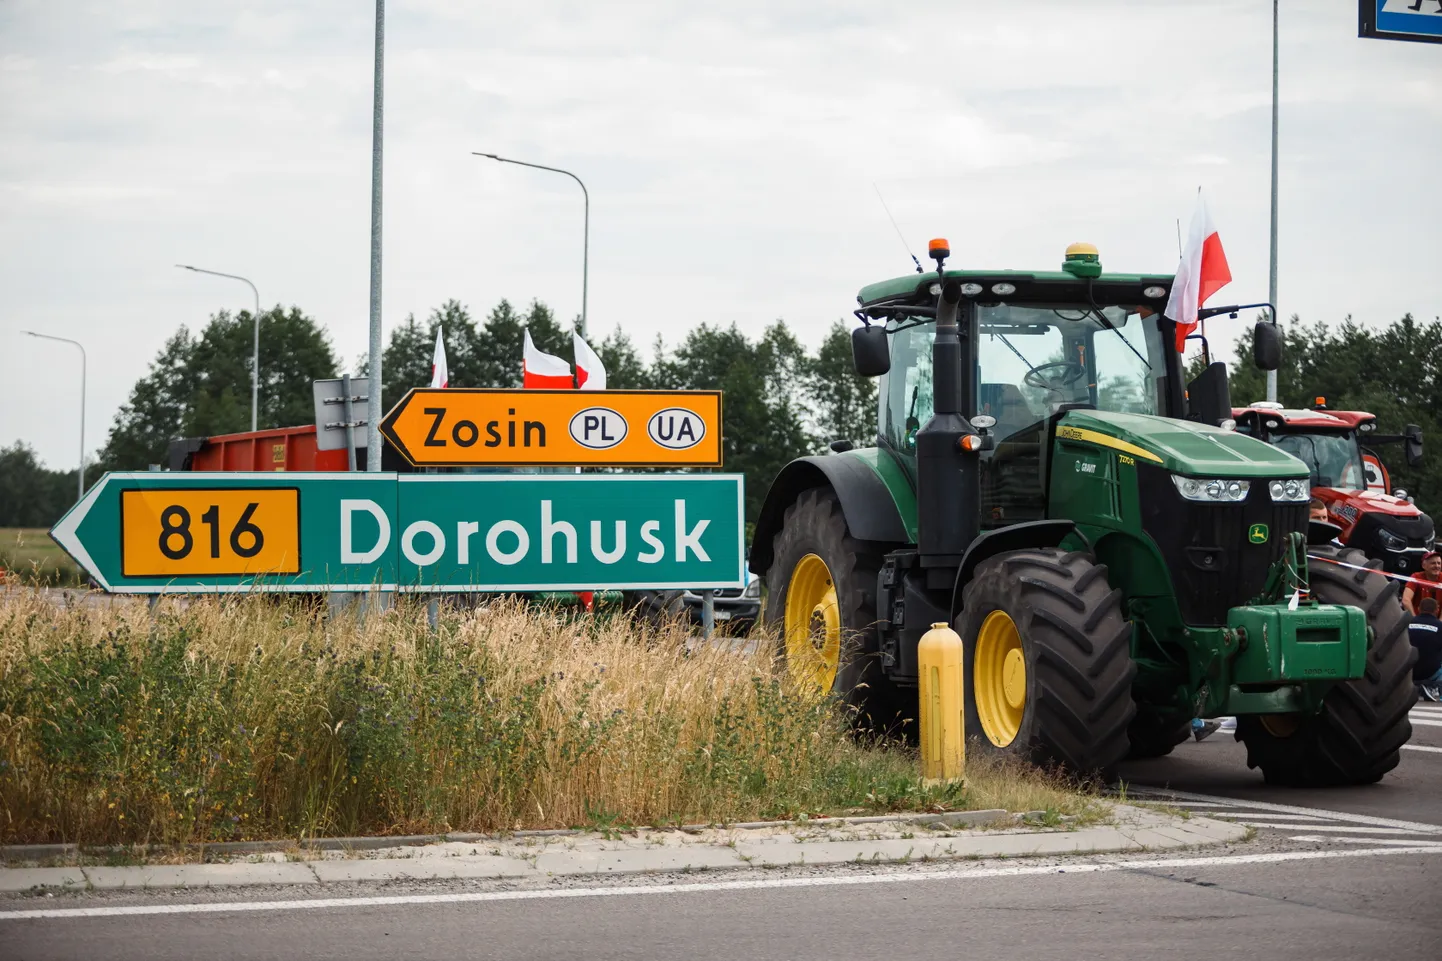 Poola traktorijuhid Ukraina piiri lähistel.